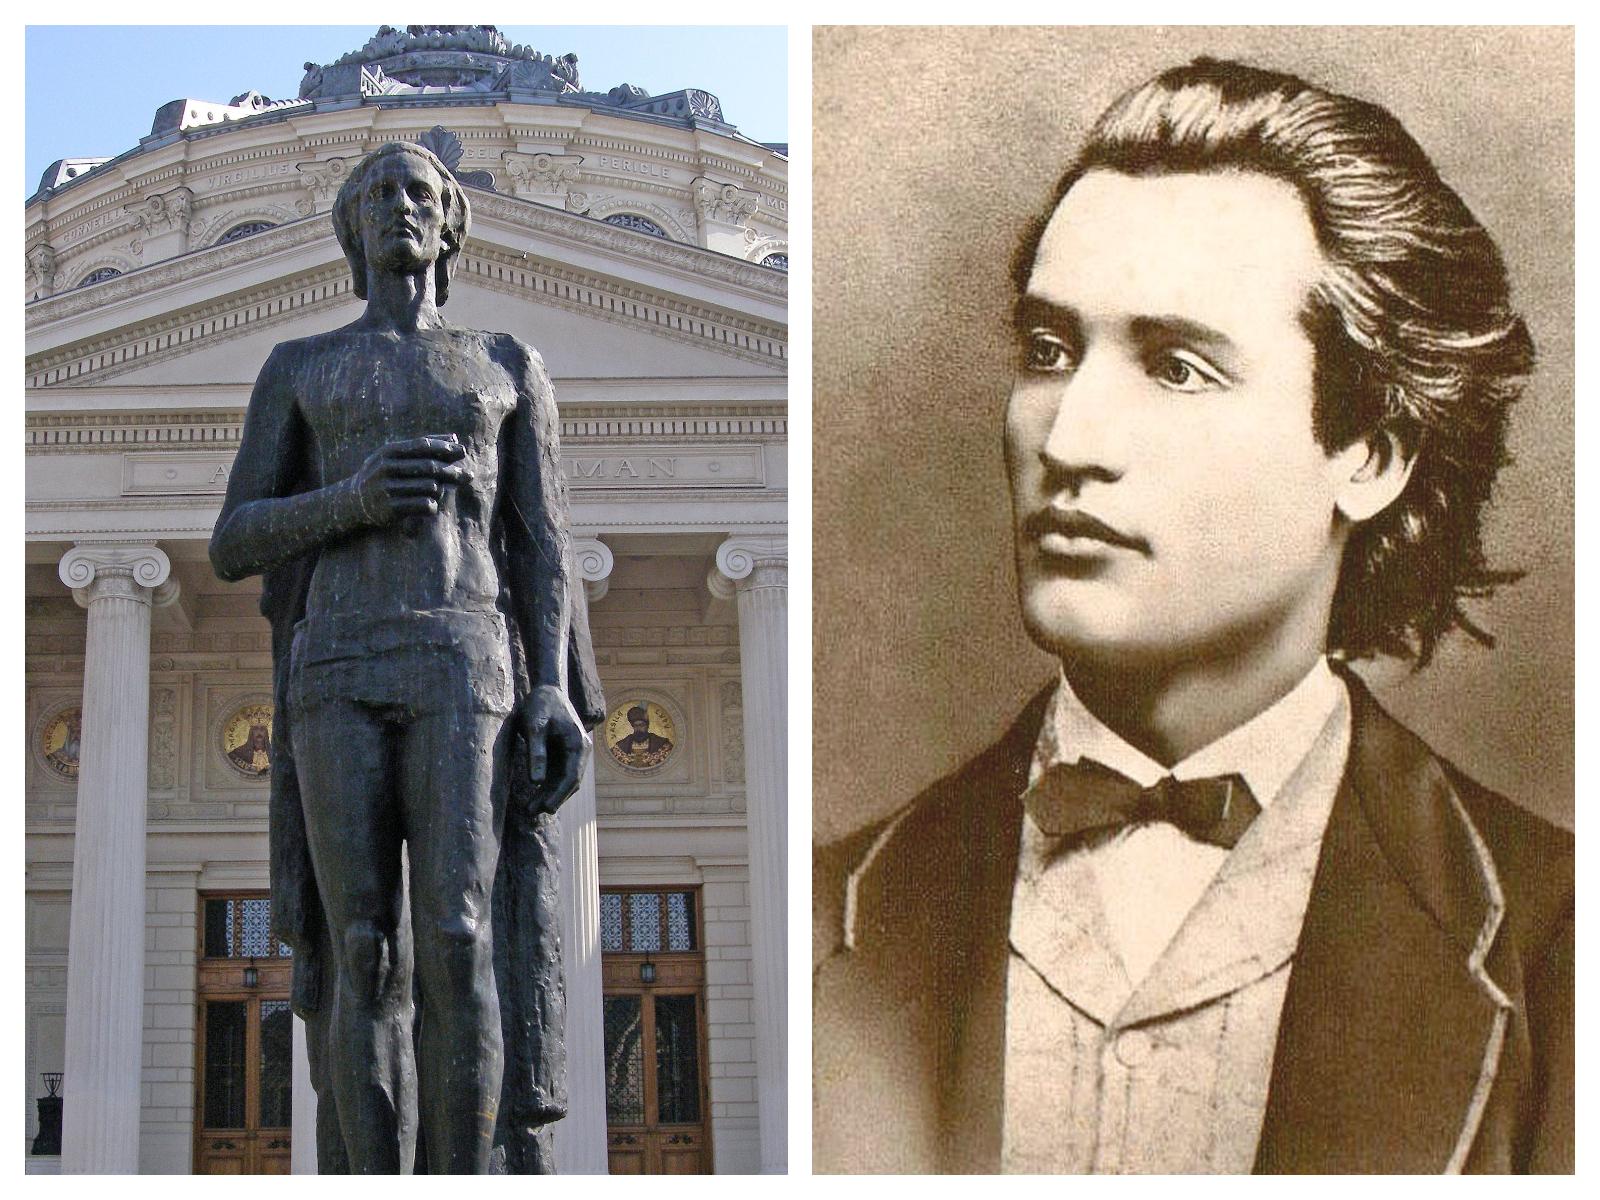 Statuia lui Mihai Eminescu de la Atenetul Român și portretul petului de la vârsta de 19 ani